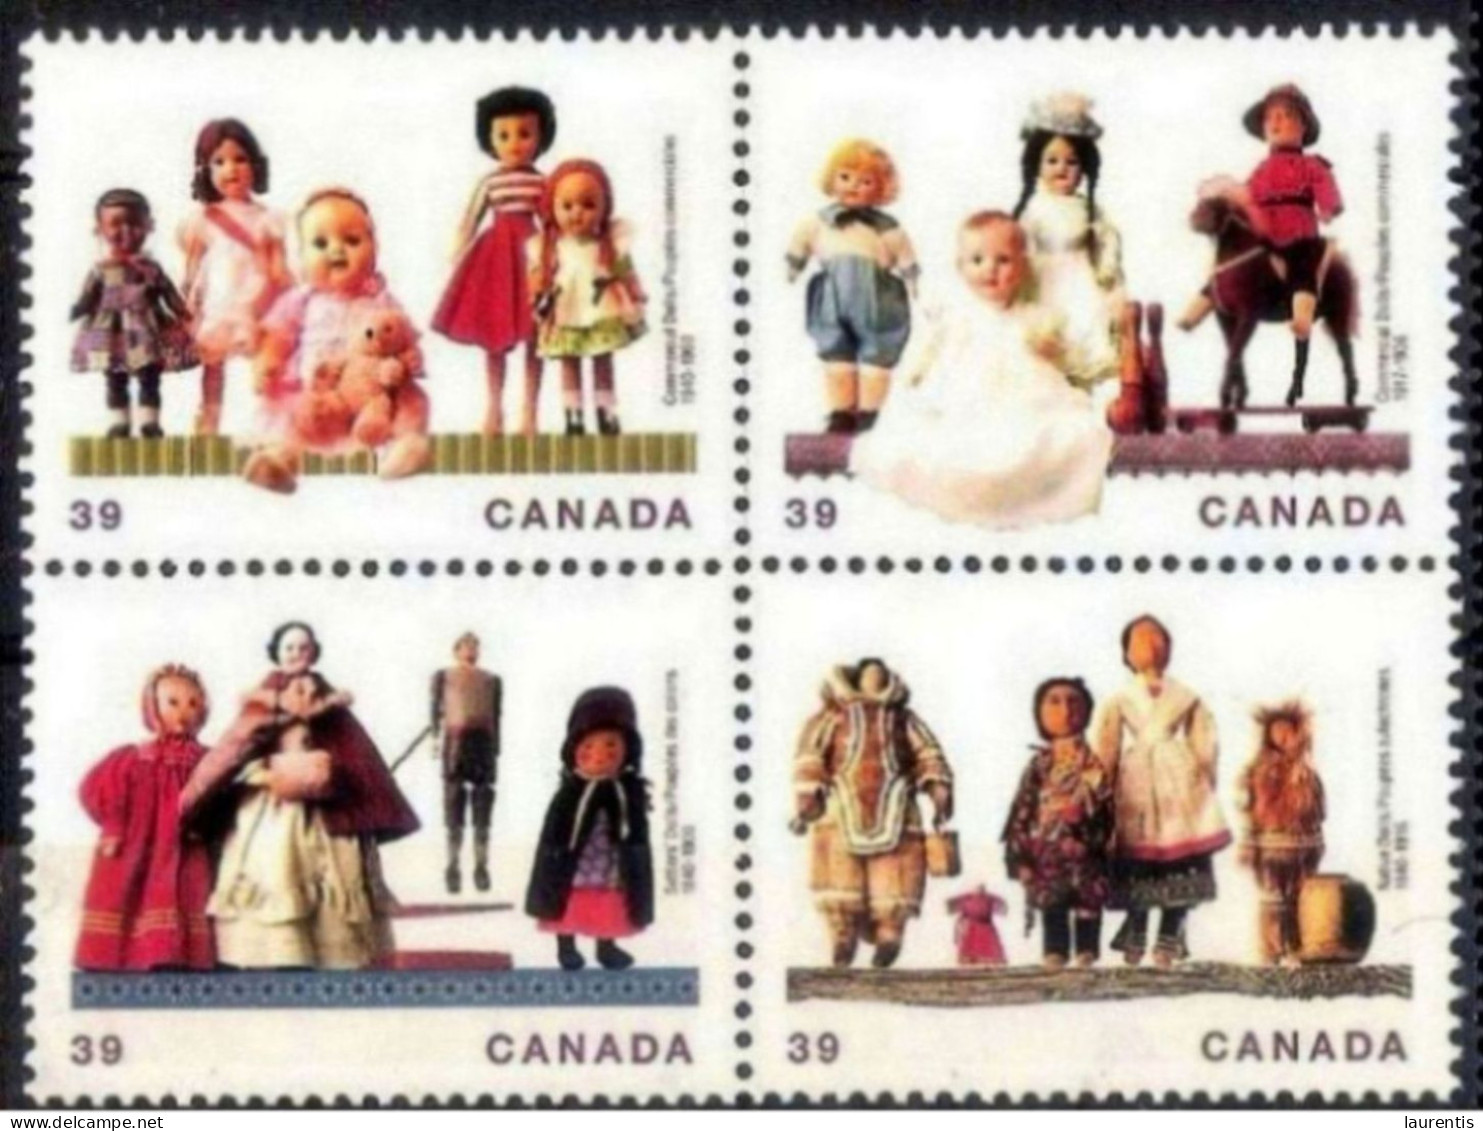 3186  Pouppées - Dolls - Canada - MNH - 1,65 . - Muñecas